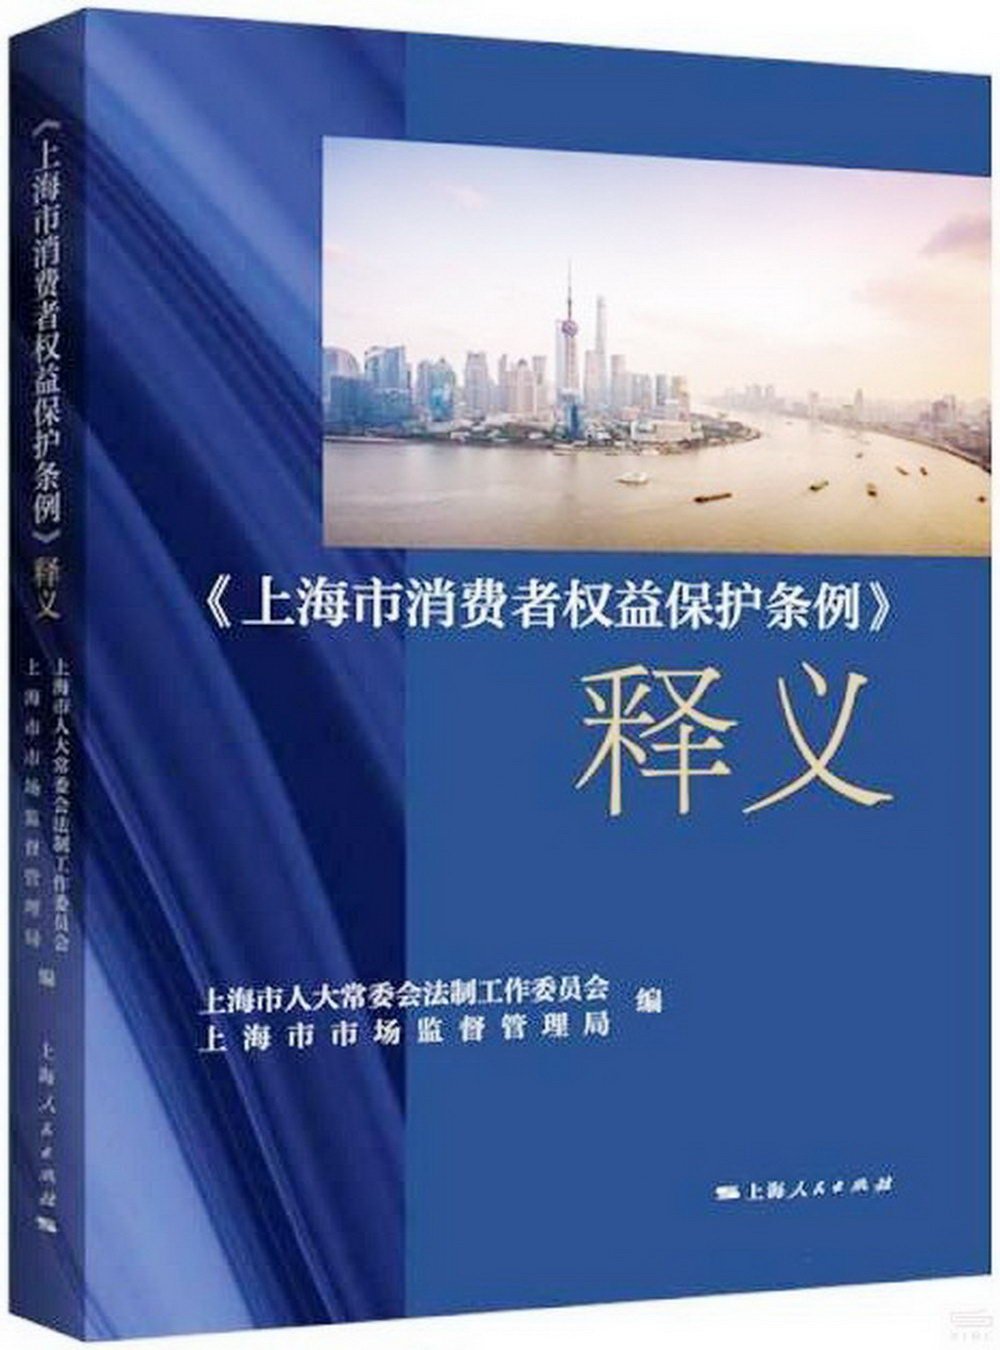 《上海市消費者權益保護條例》釋義